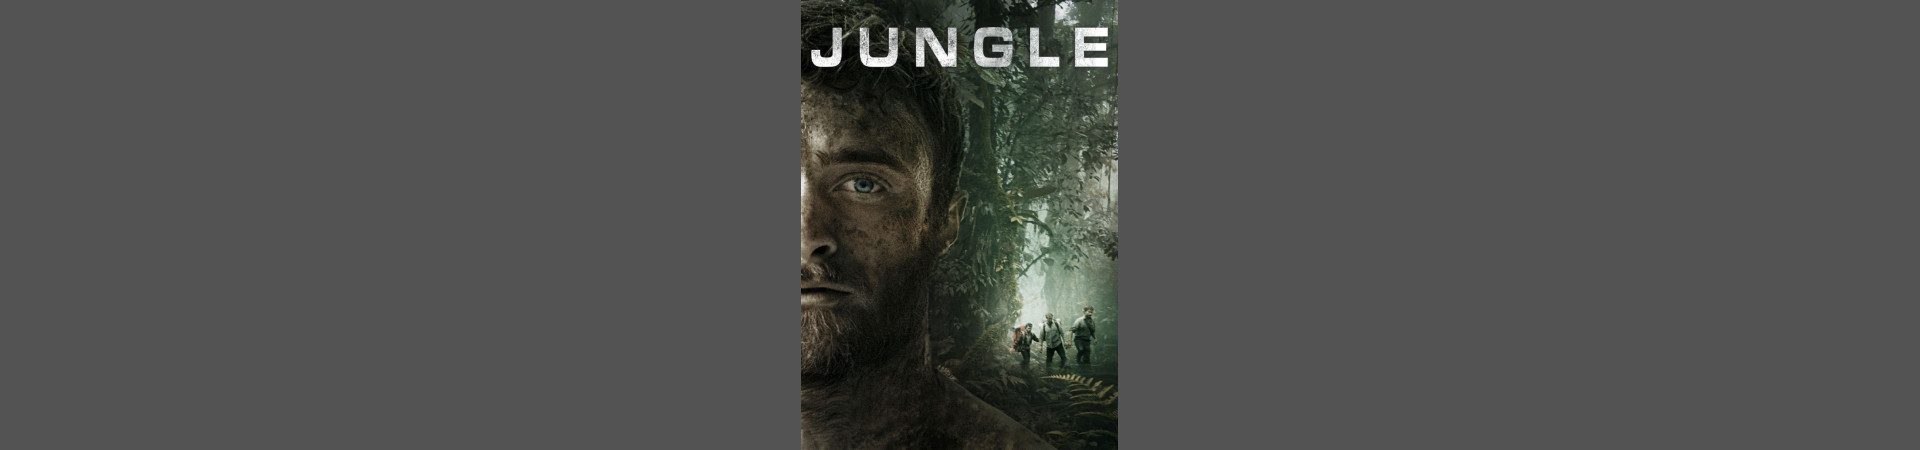 Jungle Cover